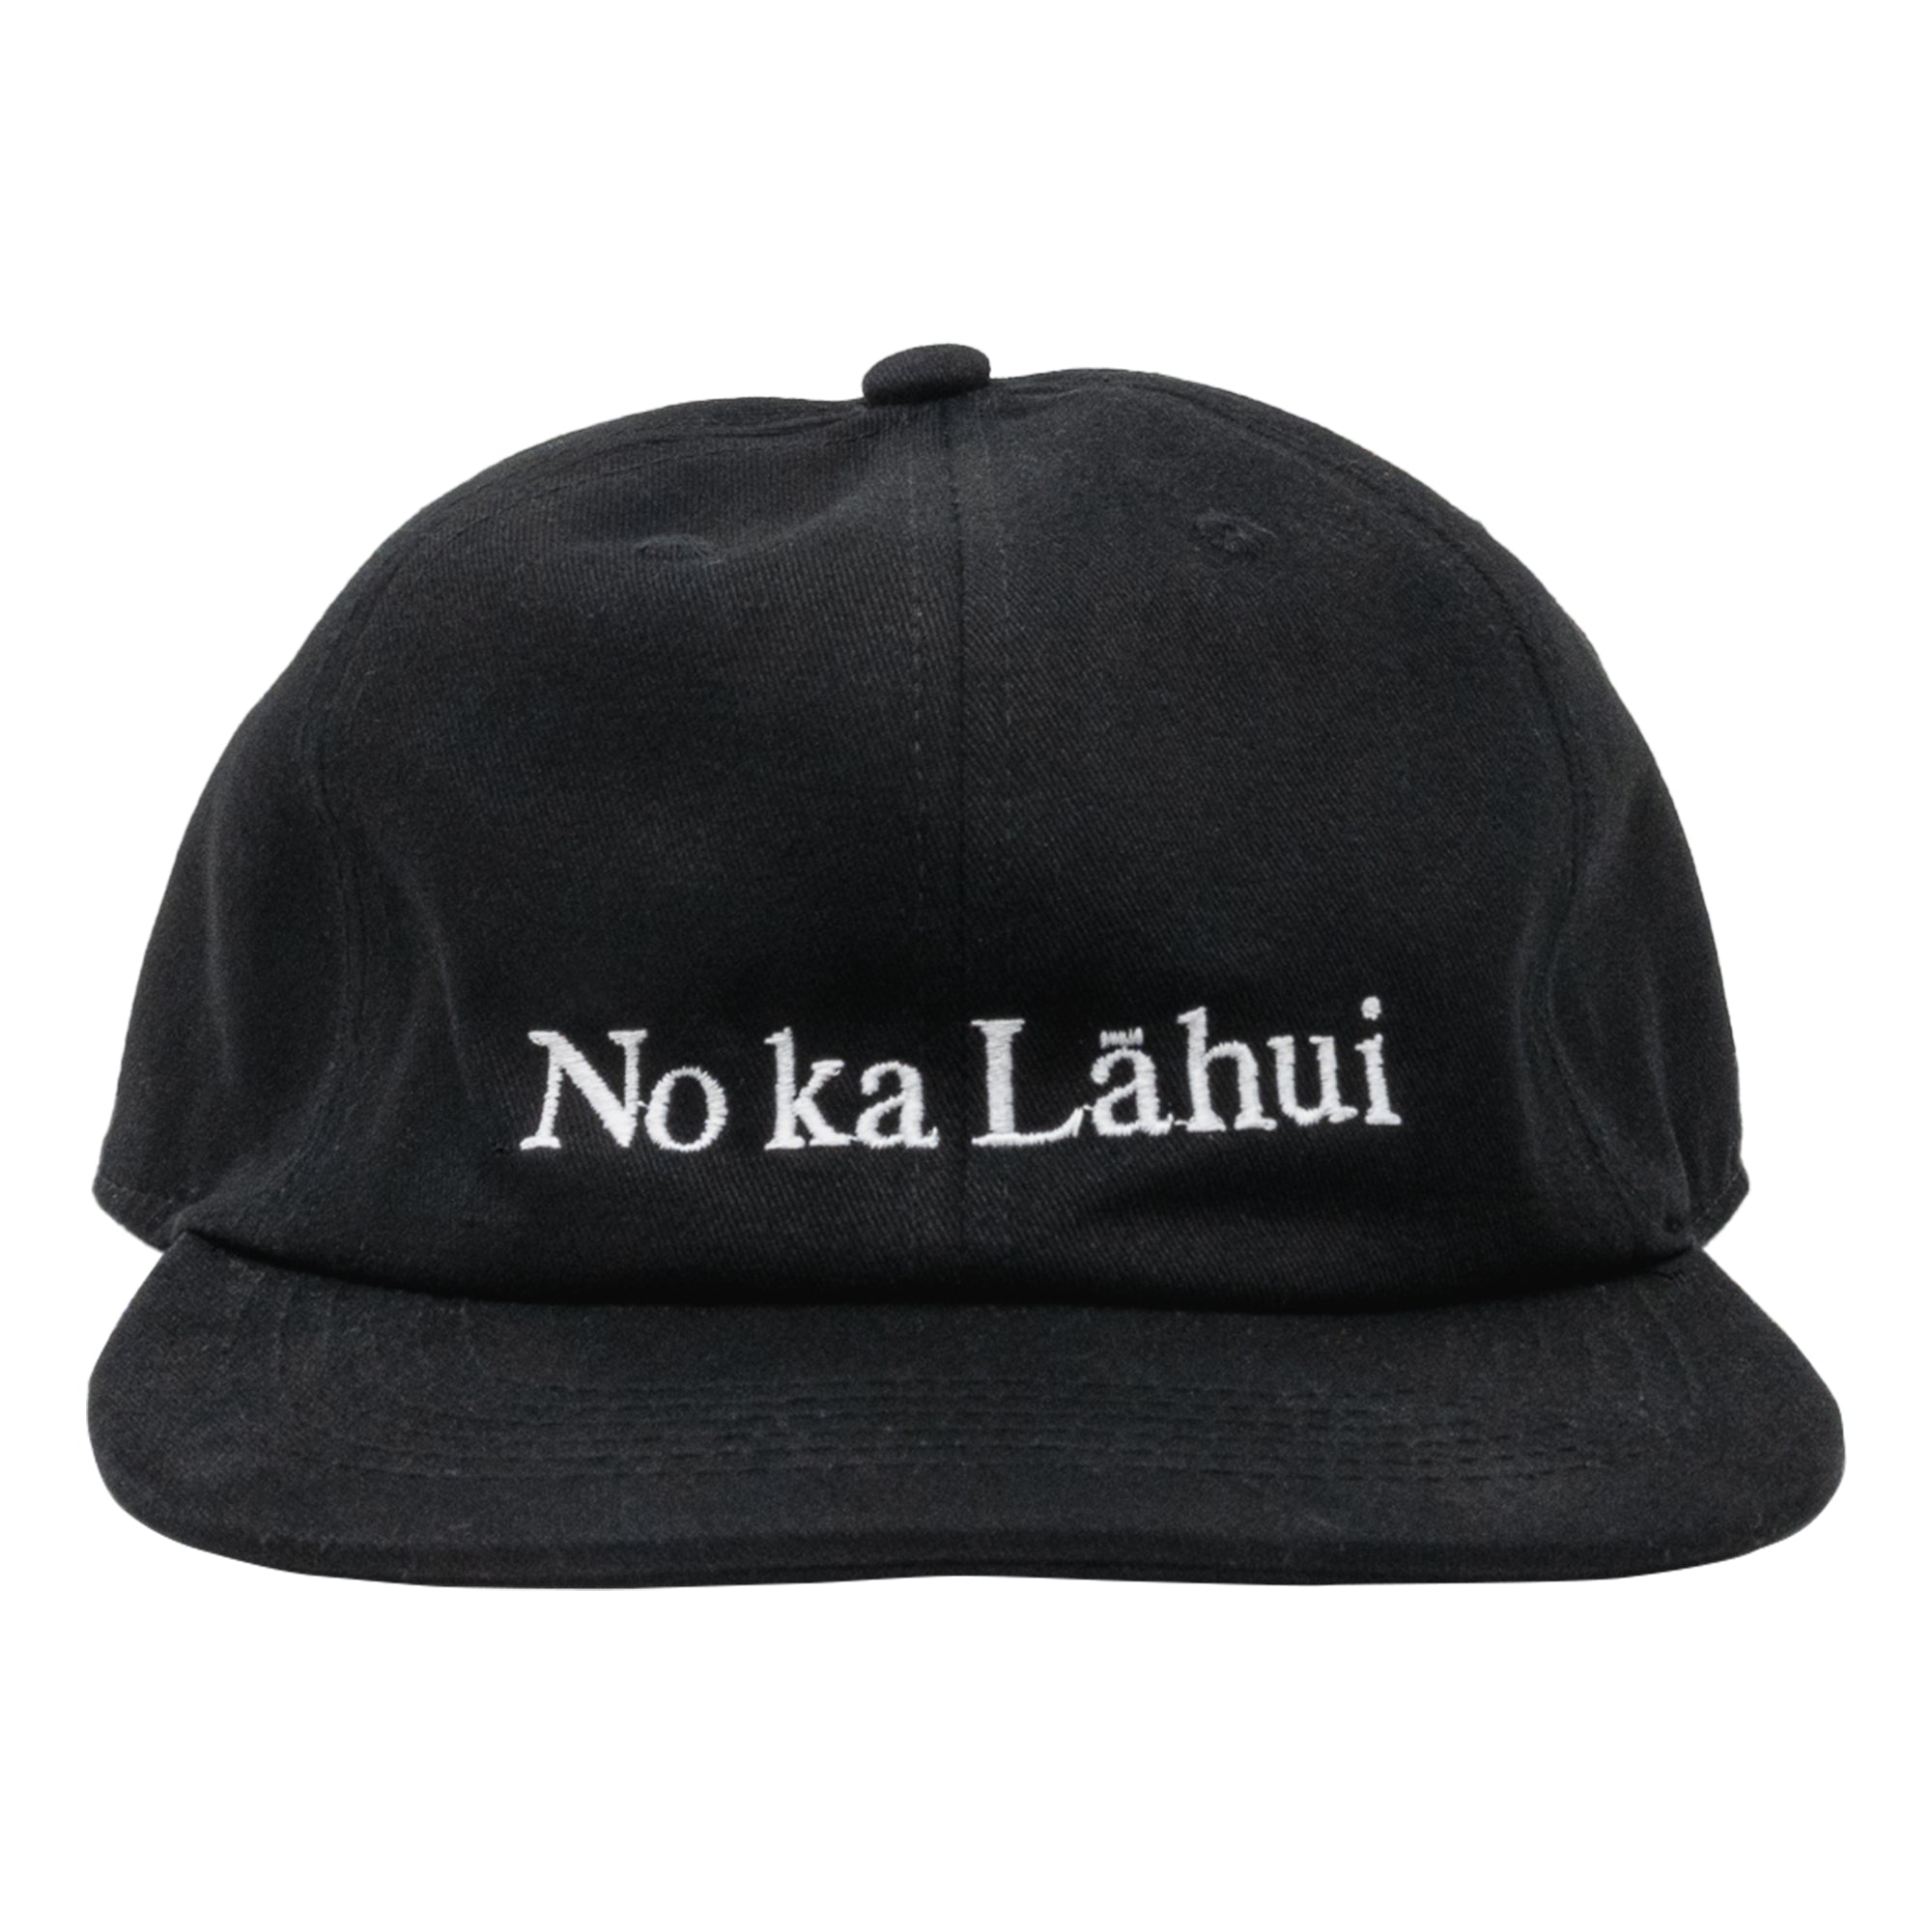 NO KA LAHUI Snapback Hat - Black